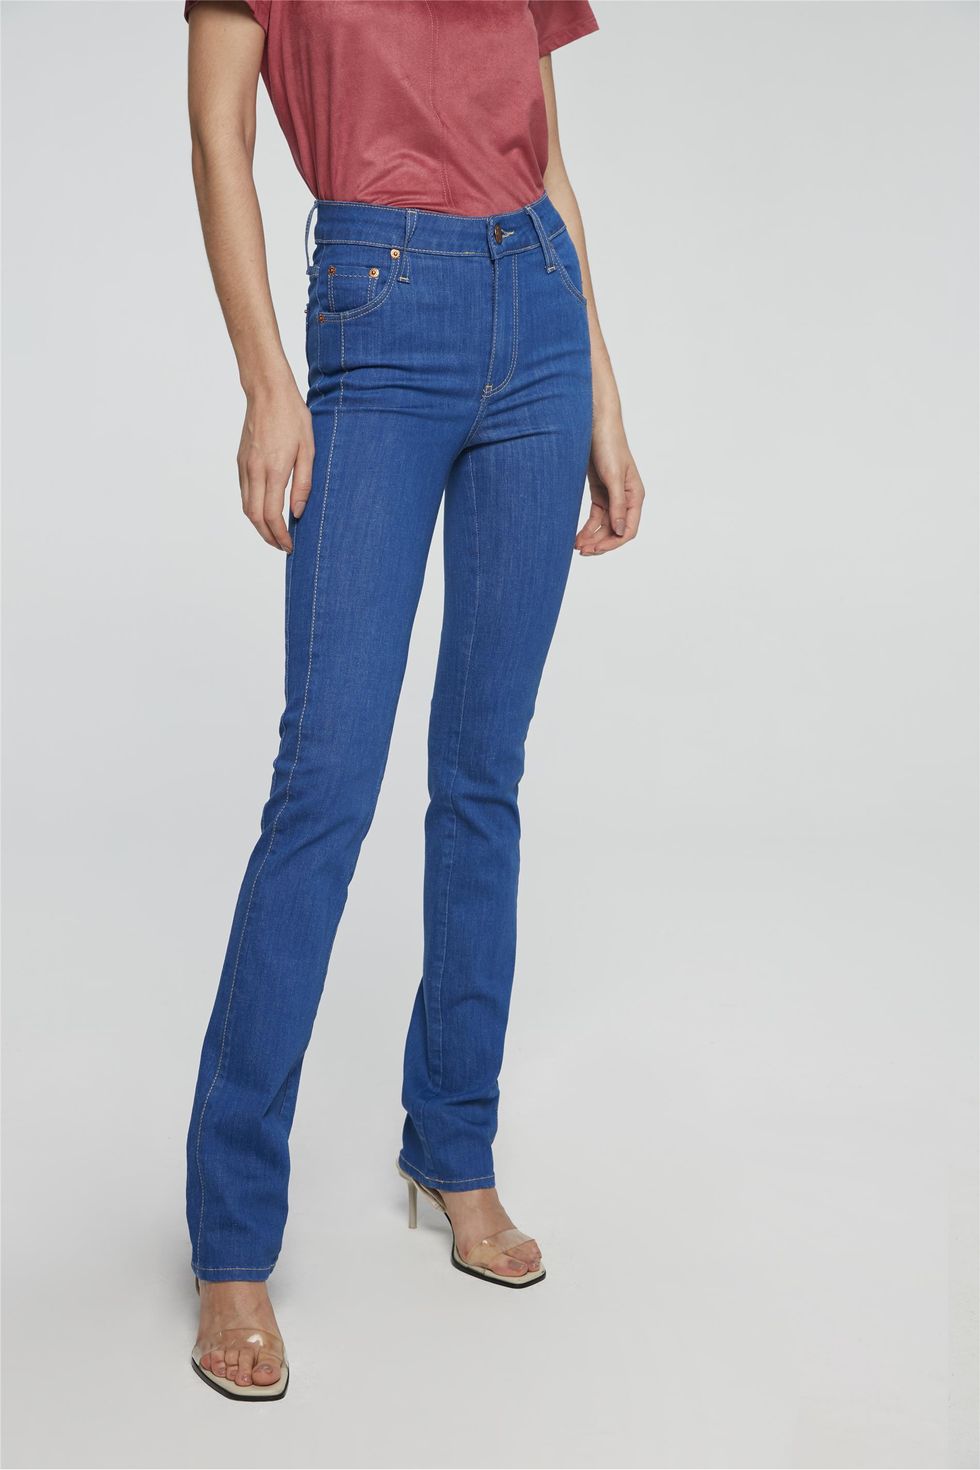 calças femininas jeans